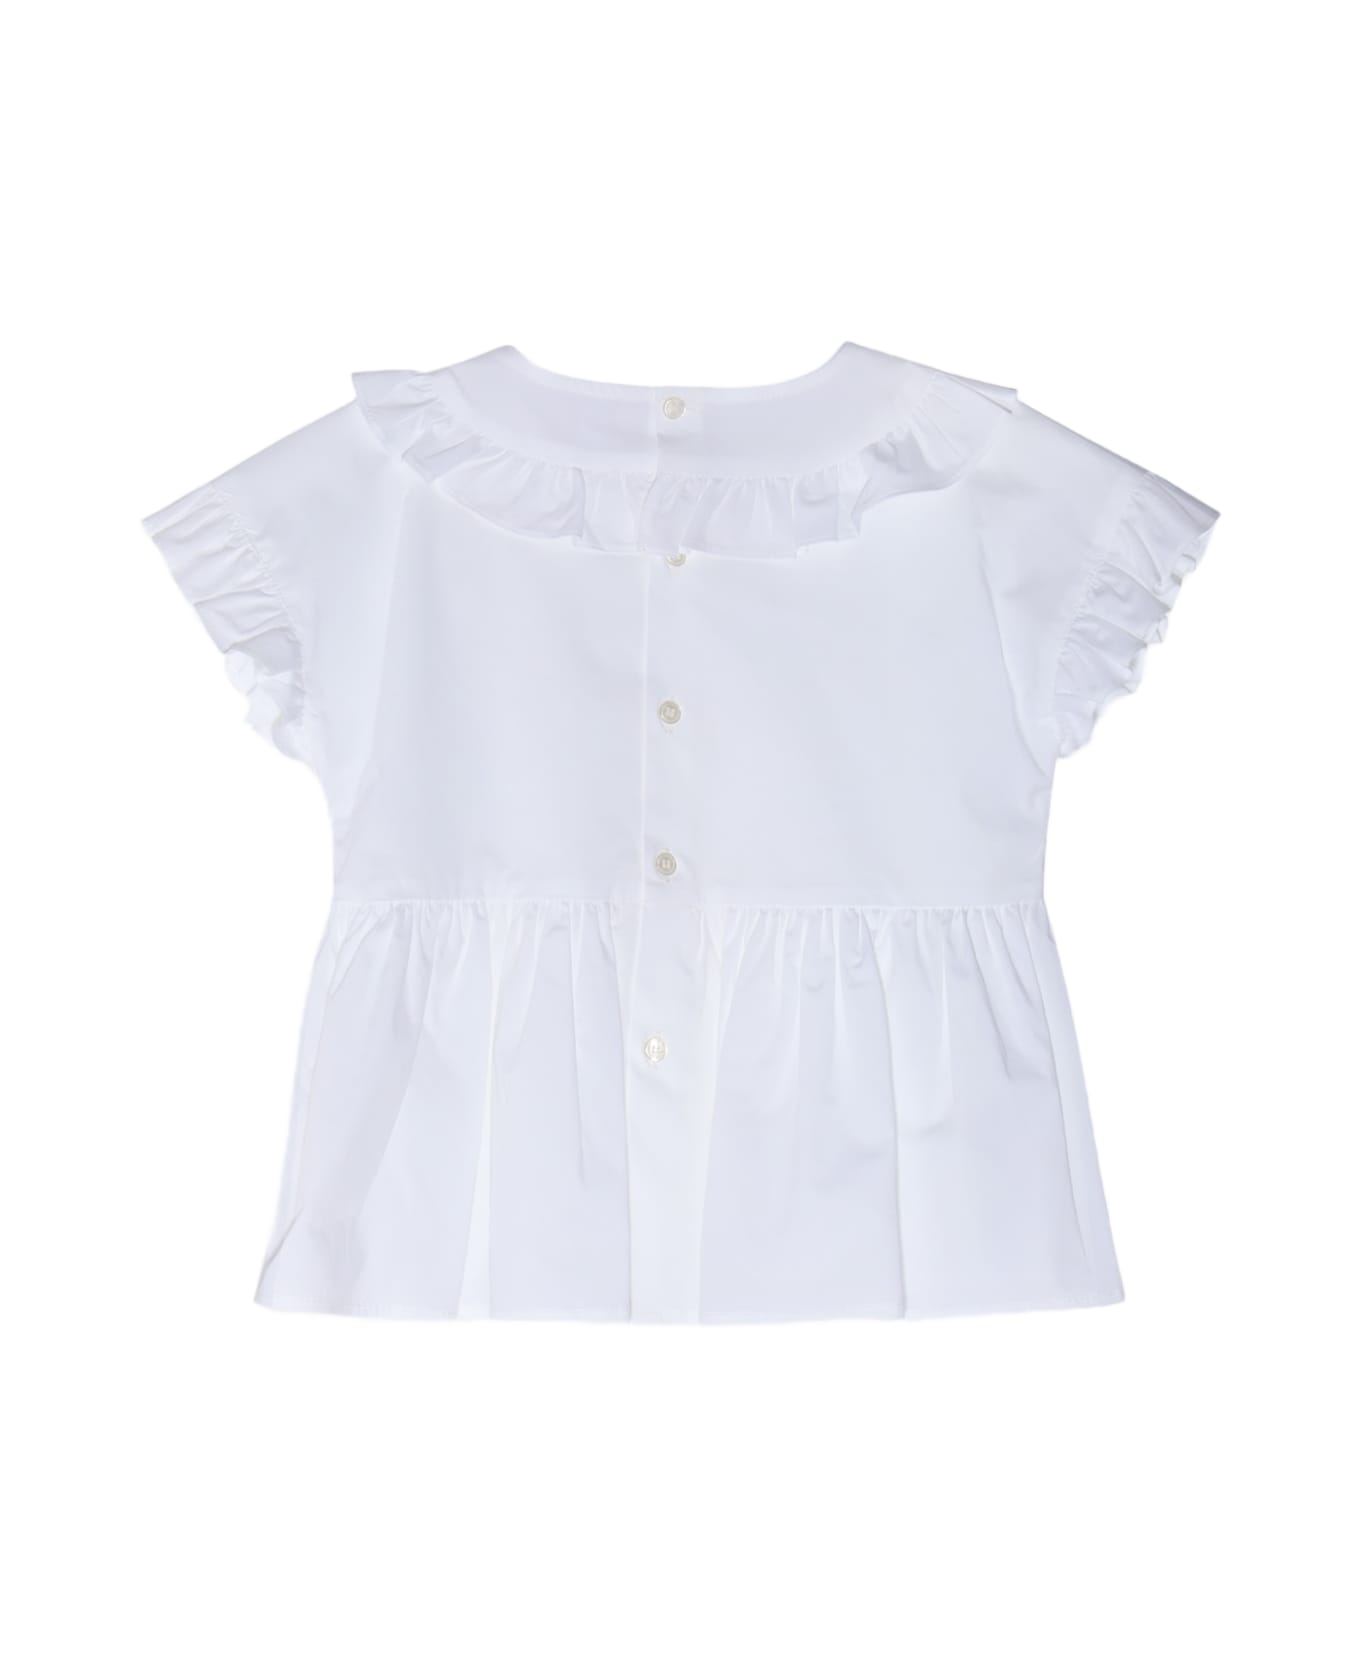 Il Gufo White Cotton Ruffles Shirt - White